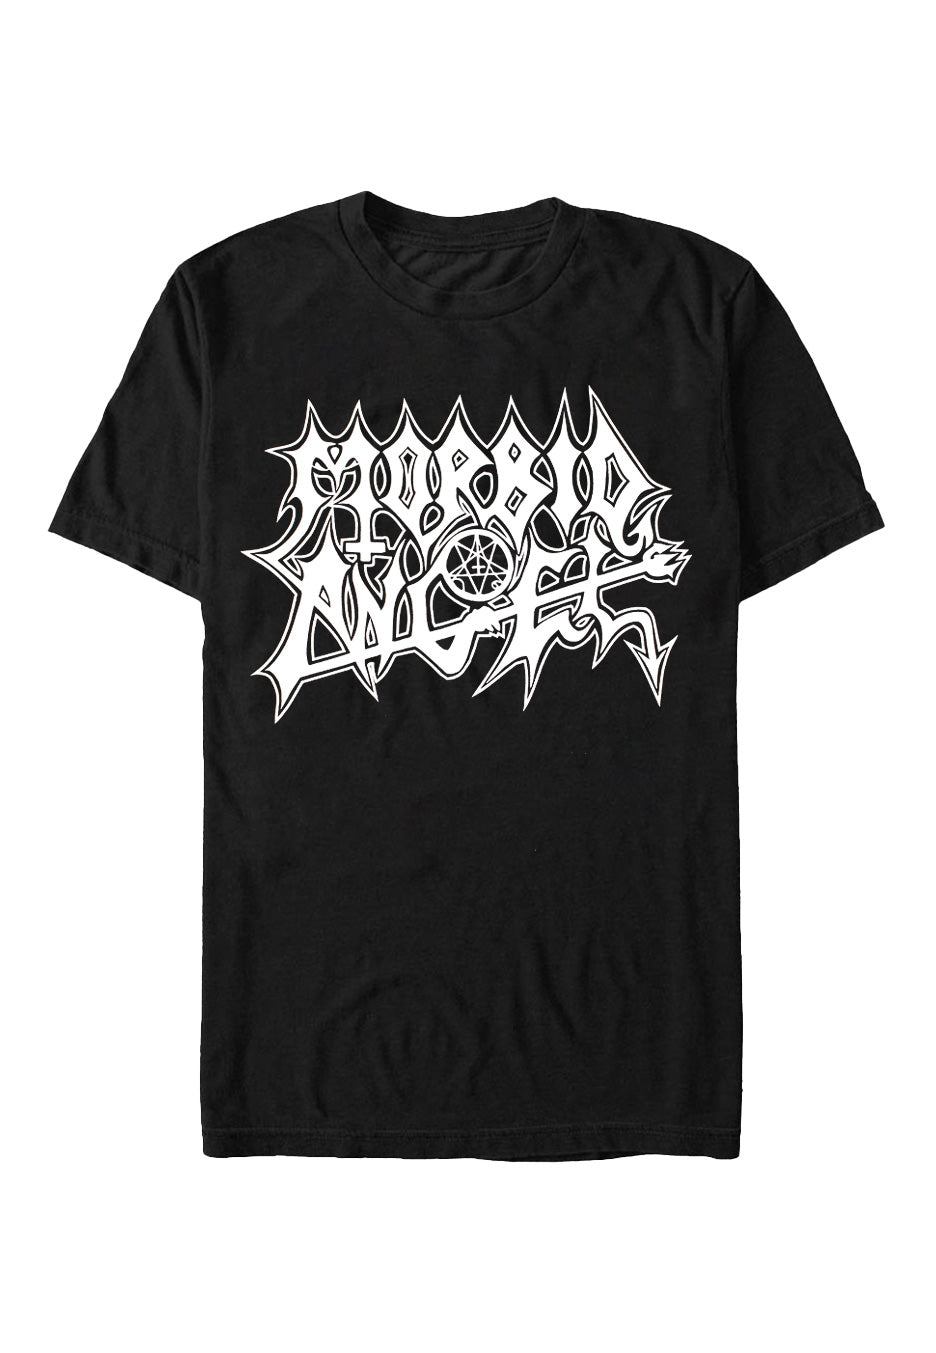 Morbid Angel - Extreme Music - T-Shirt